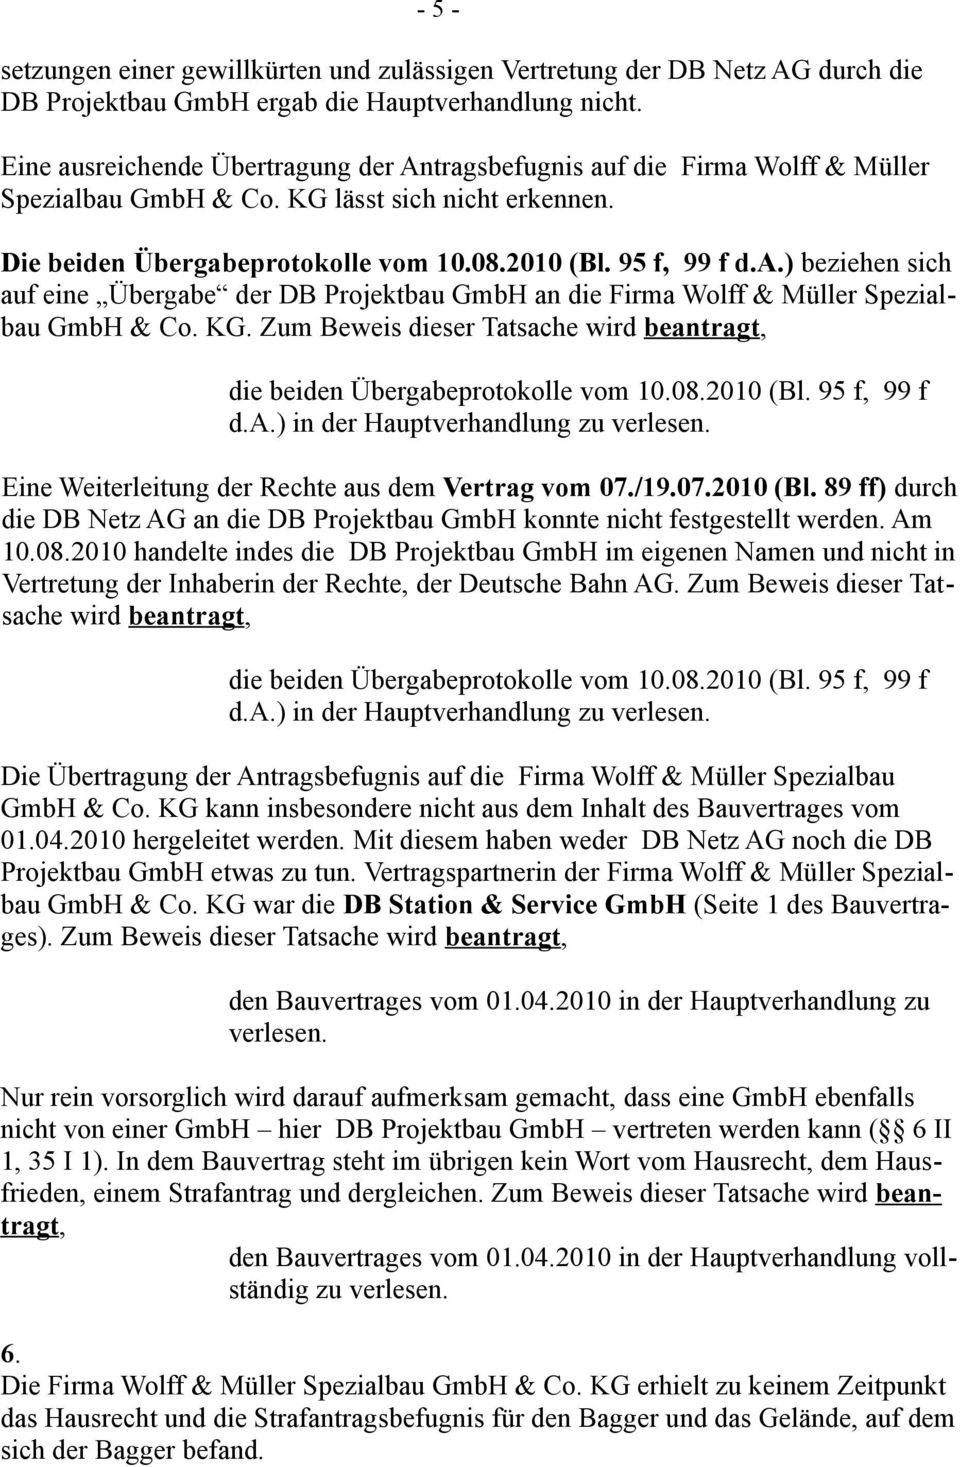 KG. die beiden Übergabeprotokolle vom 10.08.2010 (Bl. 95 f, 99 f d.a.) in der Hauptverhandlung zu verlesen. Eine Weiterleitung der Rechte aus dem Vertrag vom 07./19.07.2010 (Bl. 89 ff) durch die DB Netz AG an die DB Projektbau GmbH konnte nicht festgestellt werden.